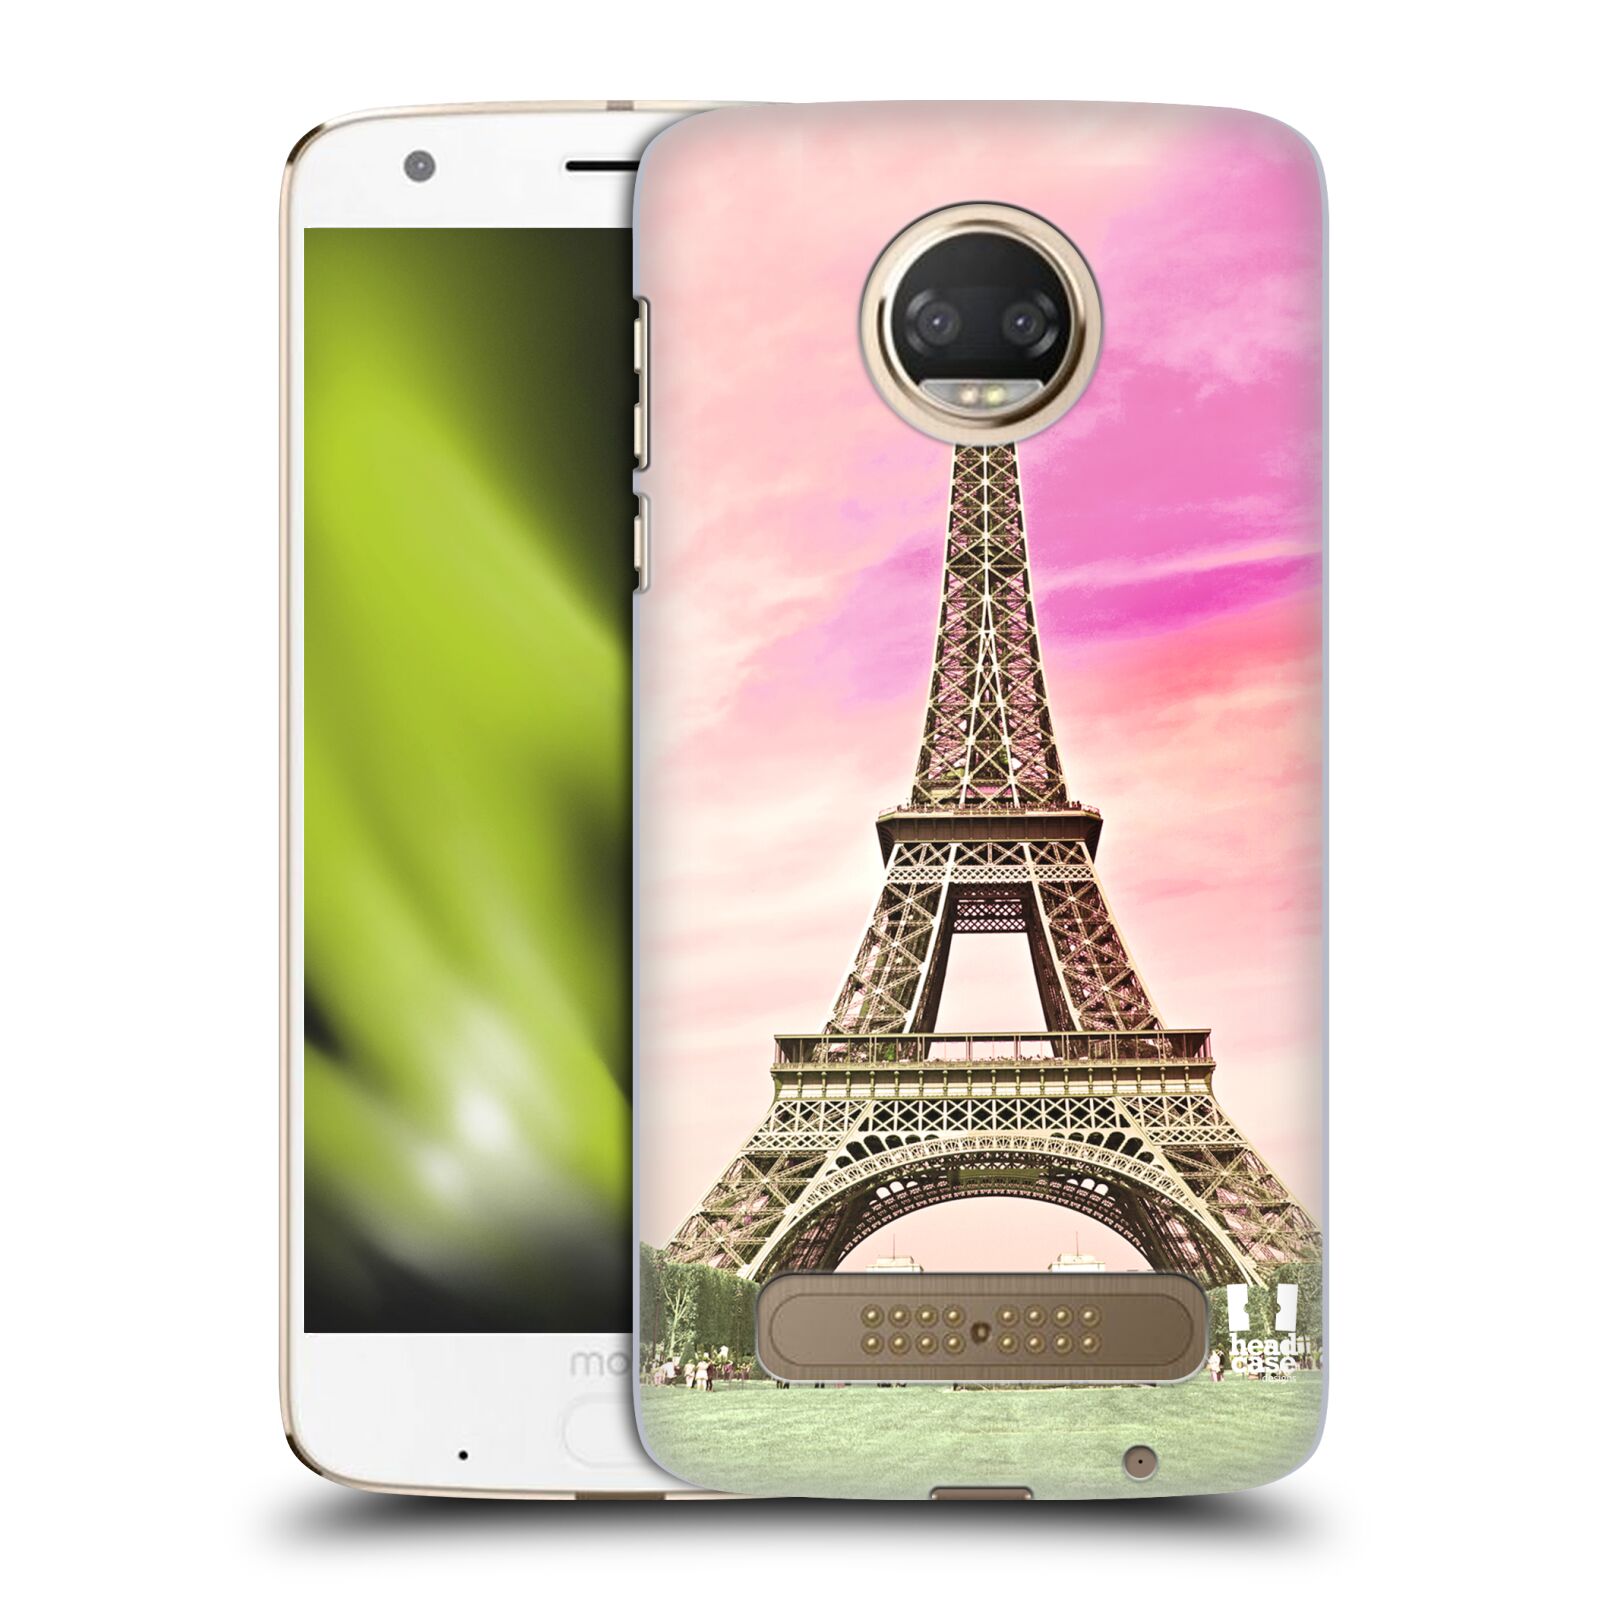 Pouzdro na mobil Motorola Moto Z2 PLAY - HEAD CASE - historická místa Eiffelova věž Paříž